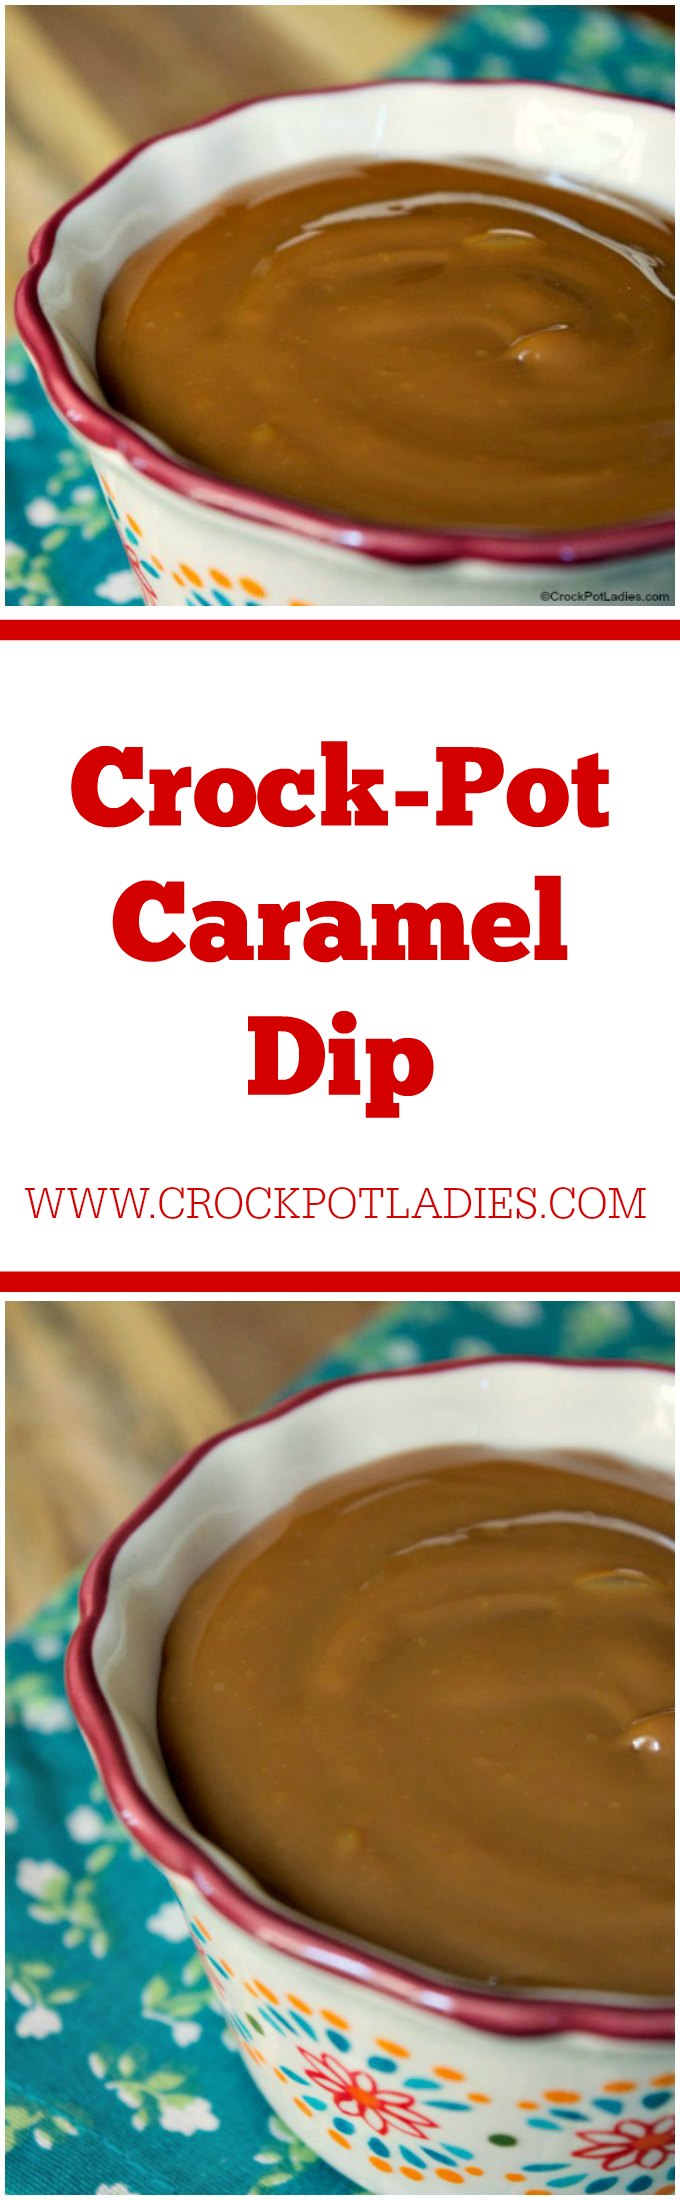 Crock-Pot Caramel Dip